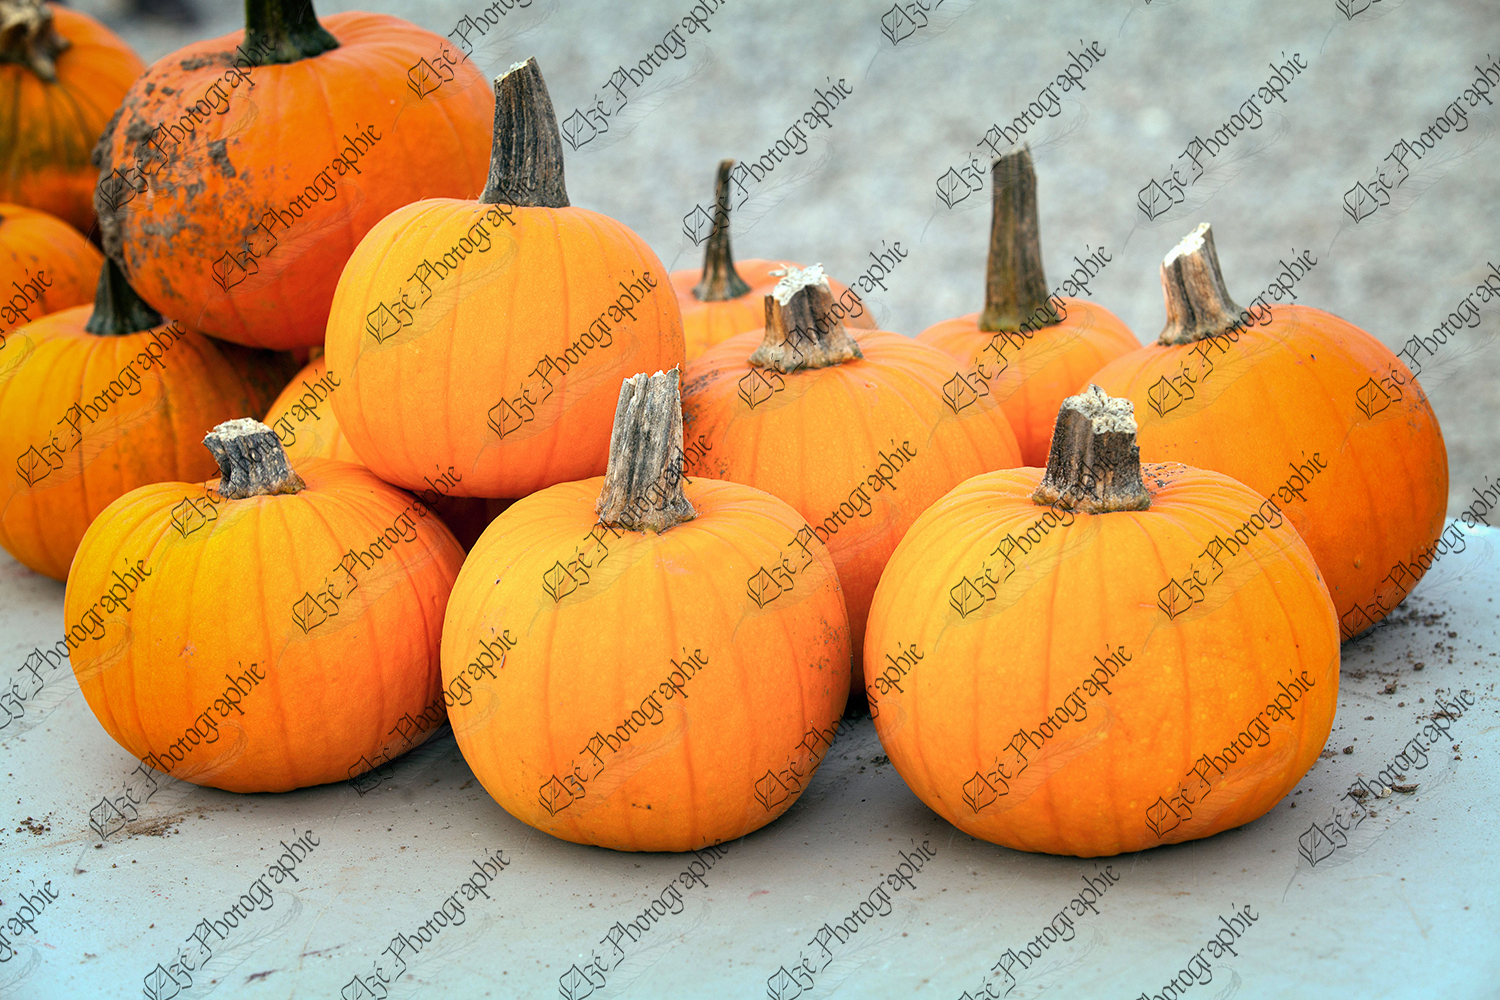 elze_photo_4632_petites_citrouilles_oranges_little_pile_pumpkins